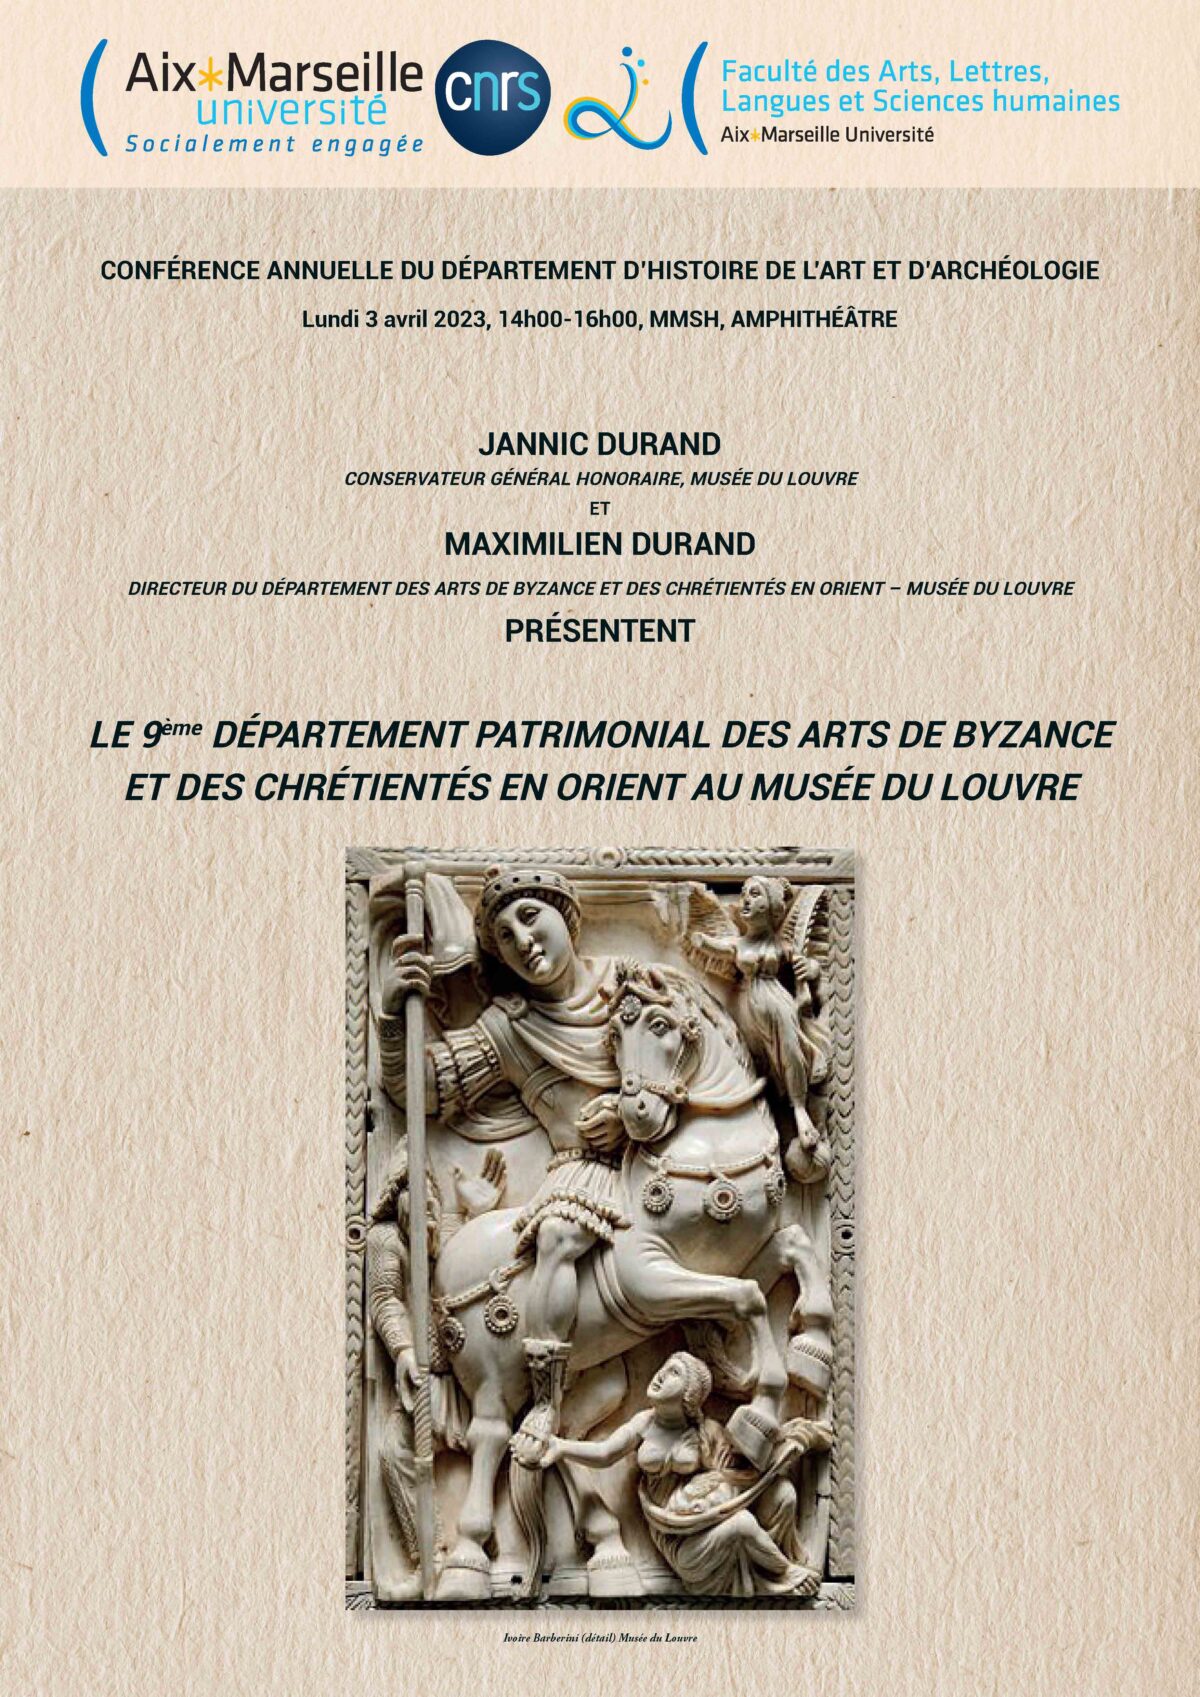 Conférence “Le 9ème département patrimonial des Arts de Byzance et des chrétientés en Orient au Musée du Louvre”